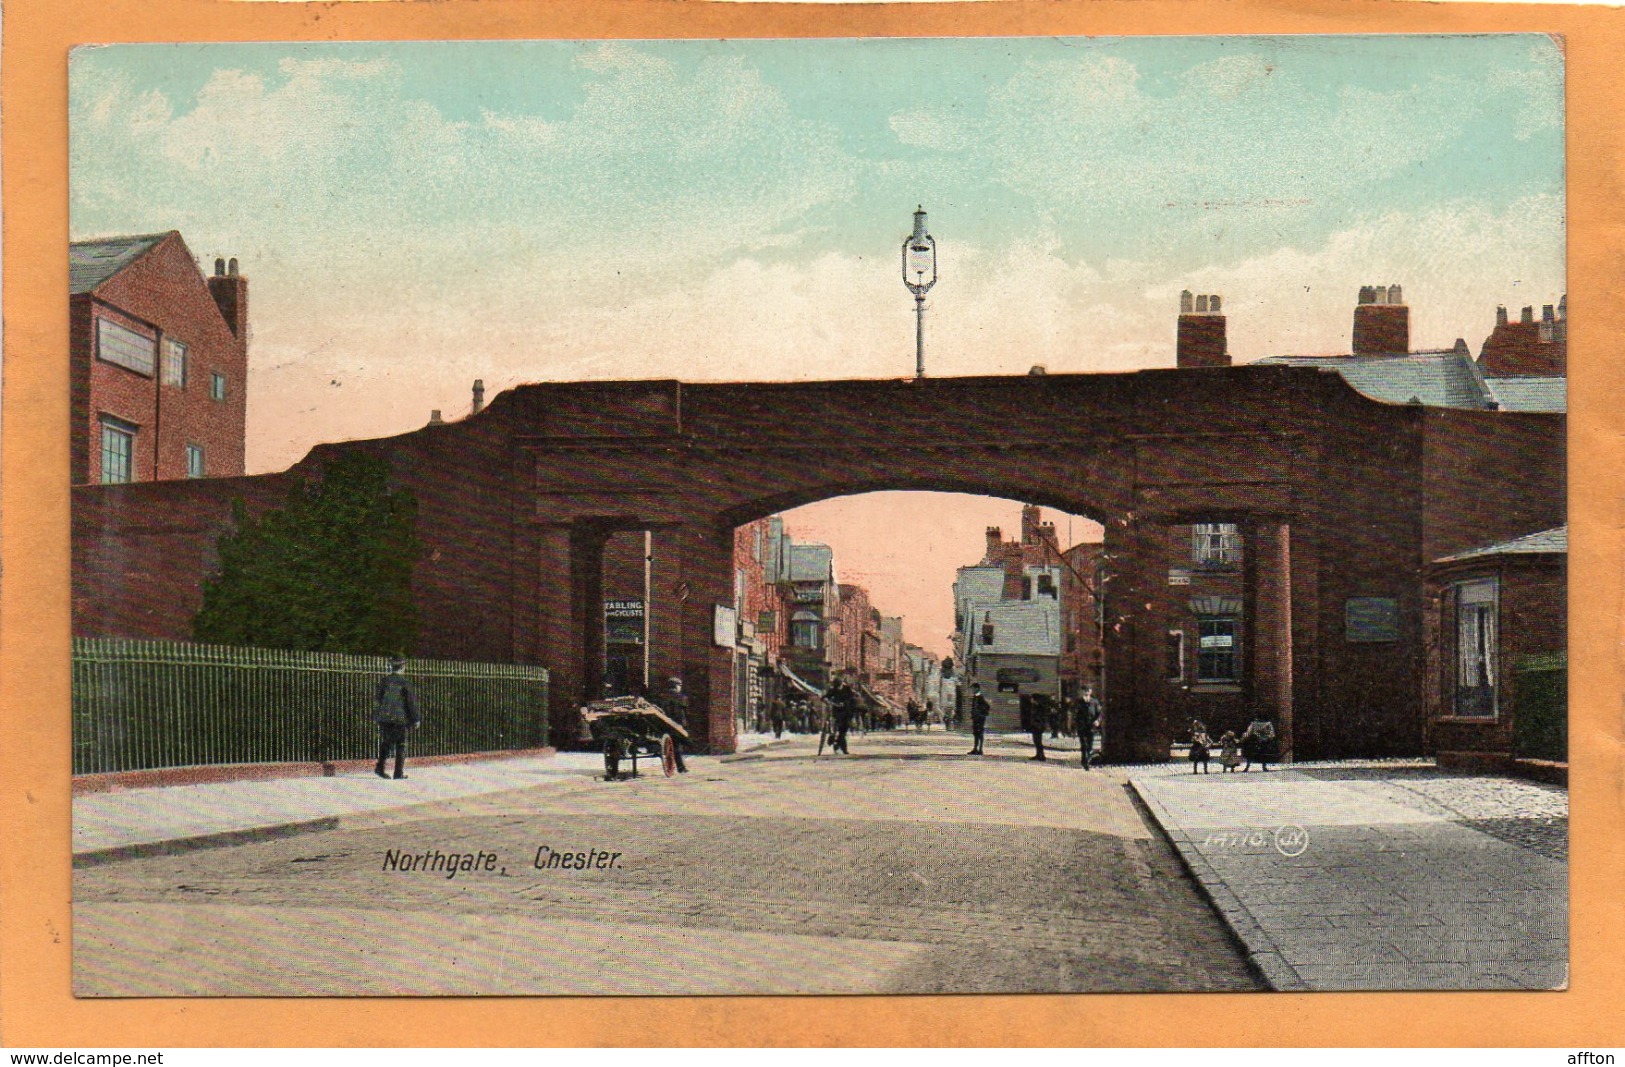 Chester UK 1908 Postcard - Chester